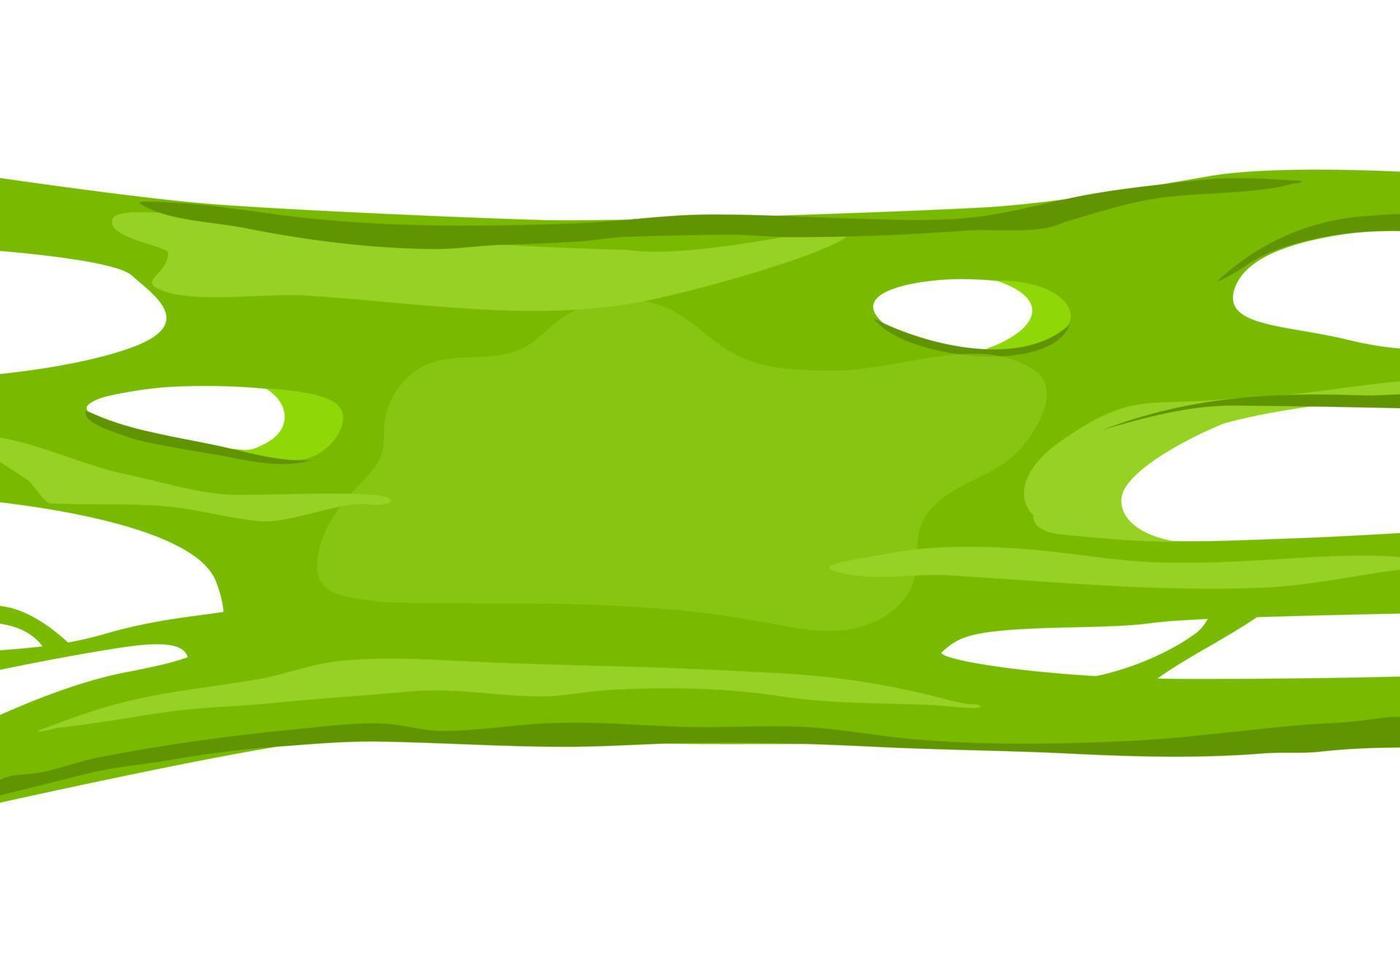 la boue verte s'étend. chewing-gum. fond de dessin animé de vecteur. vecteur